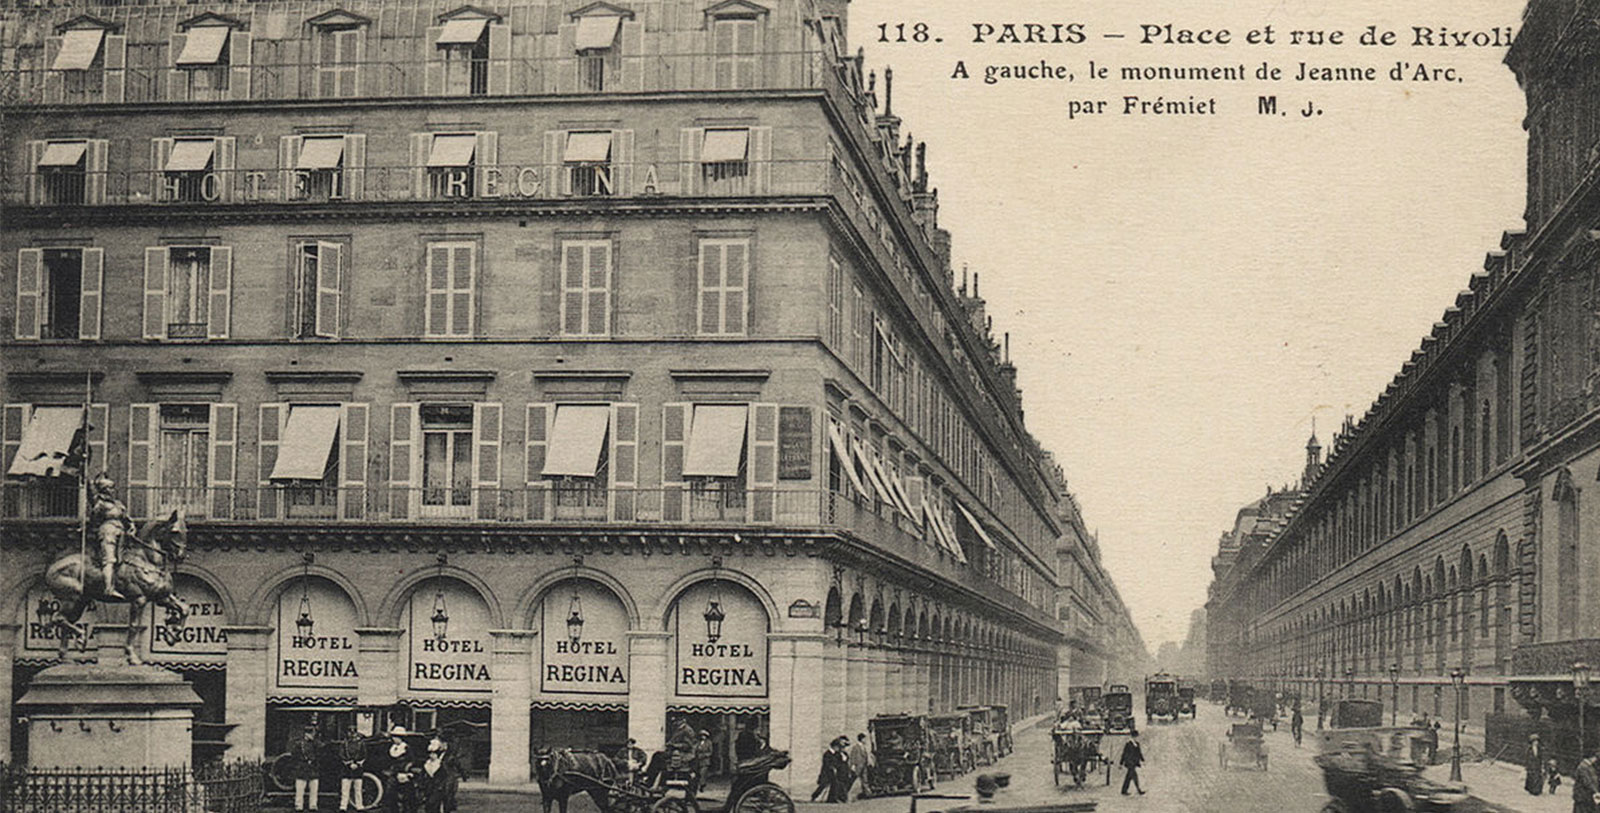 Discover the amazing Art Nouveau architecture of the Hôtel Regina Louvre.